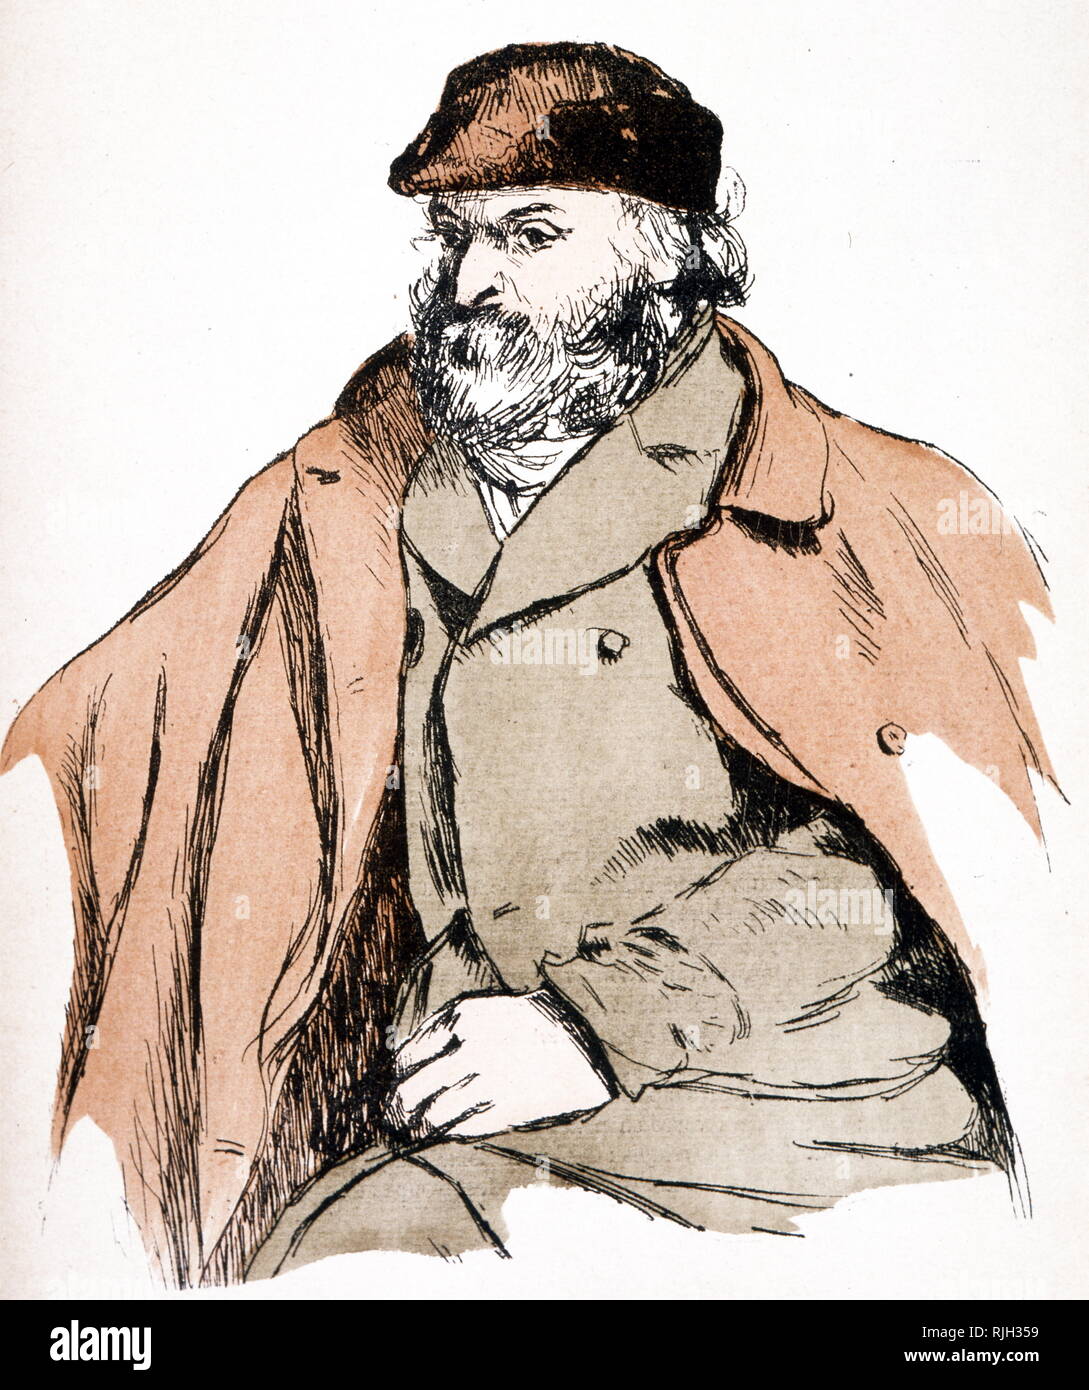 Illustration Portrait de Paul Cézanne (1839 - 1906) artiste et peintre postimpressionniste Banque D'Images